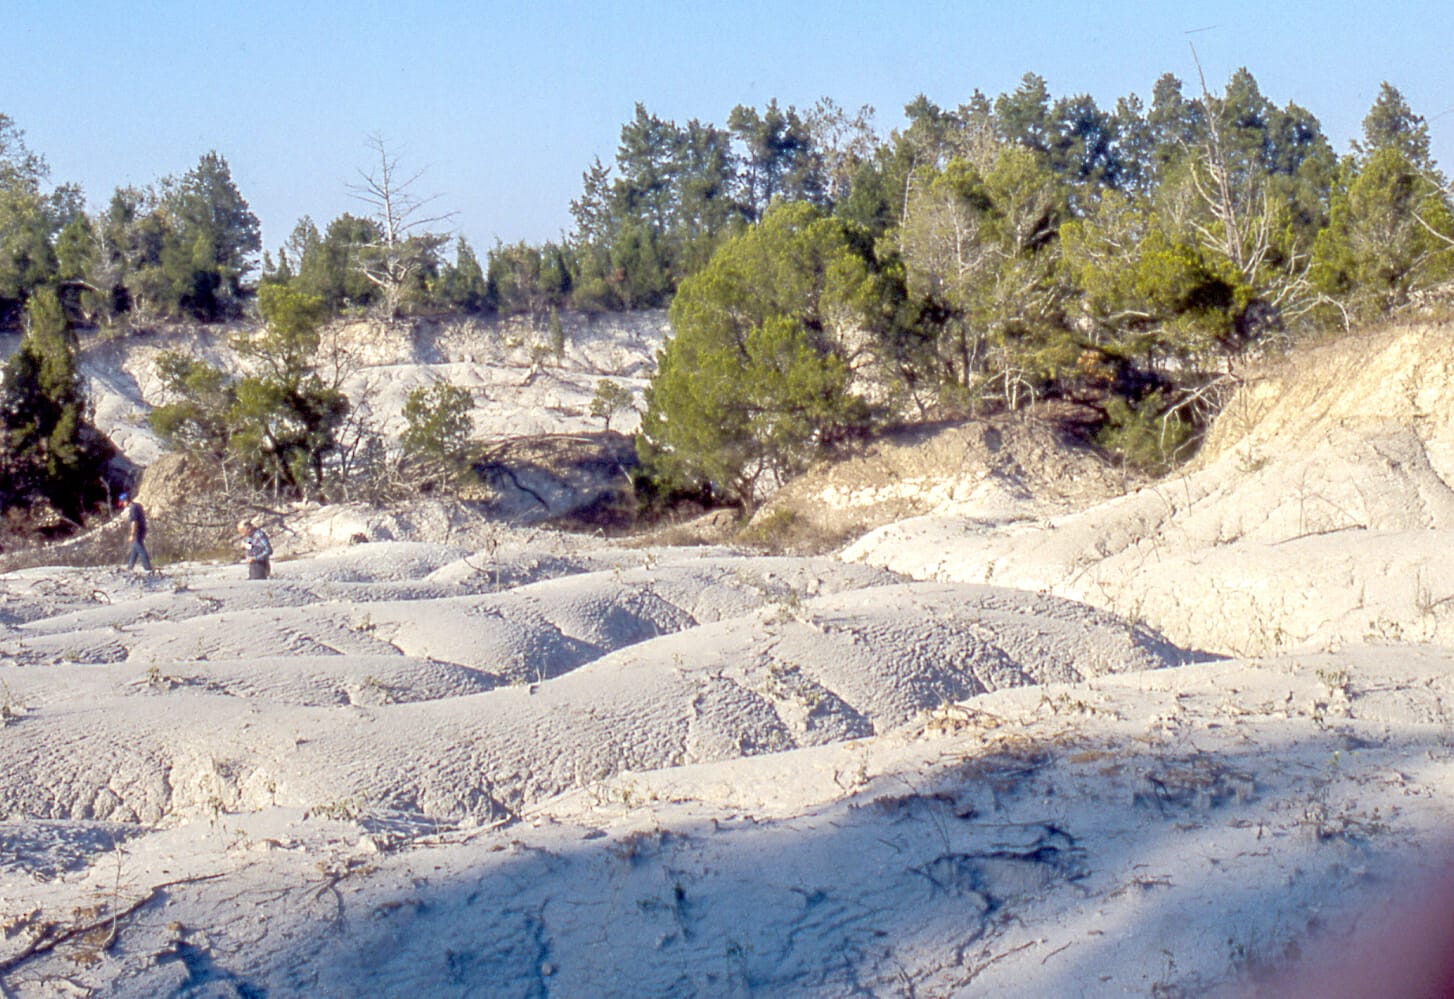 Cretaceous Period in Alabama - Encyclopedia of Alabama